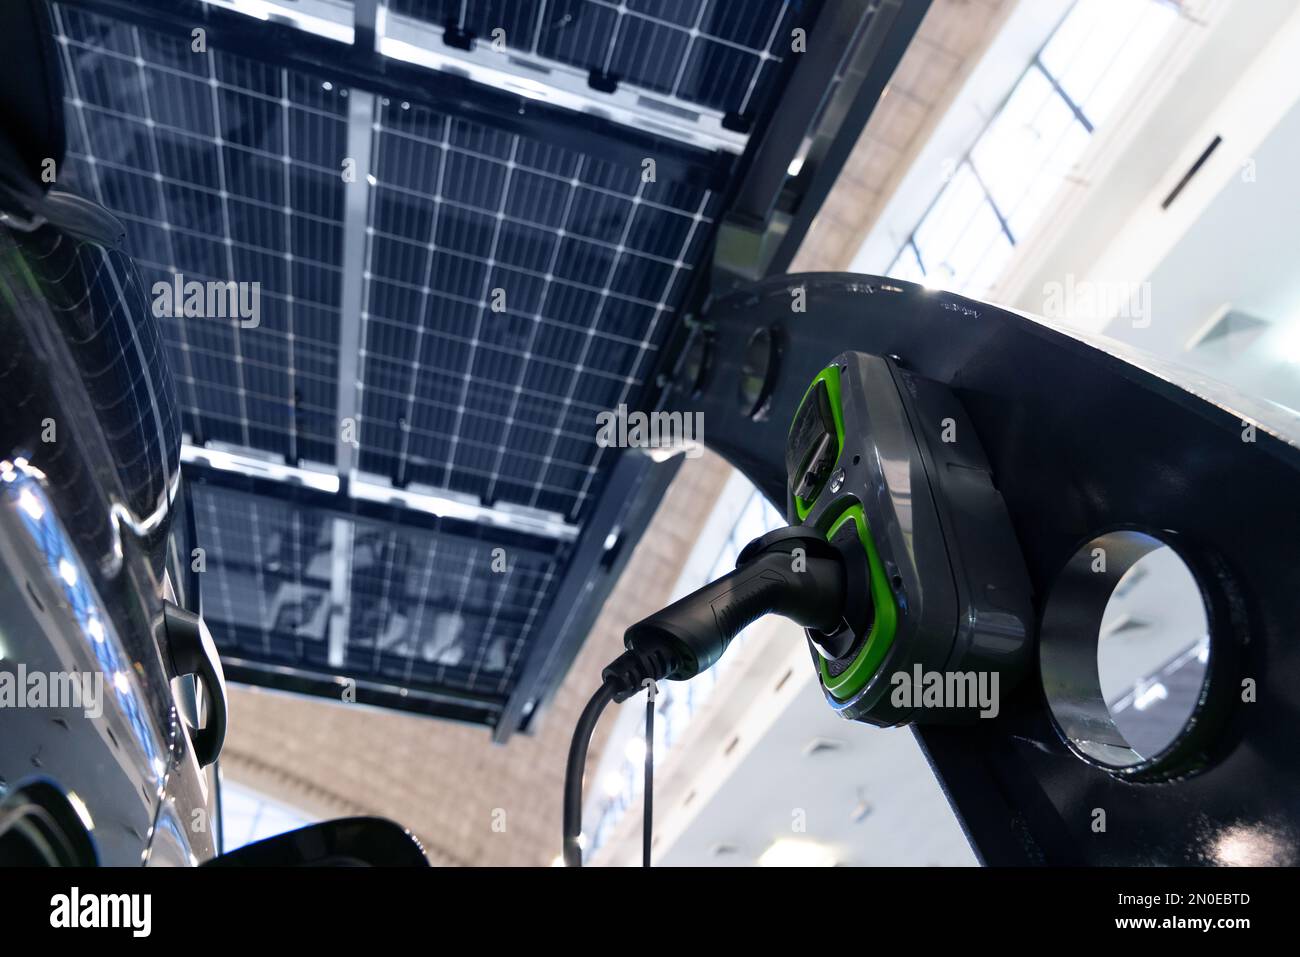 La voiture électrique est chargée à partir d'une station de charge qui prend l'énergie des panneaux solaires. Gros plan Banque D'Images